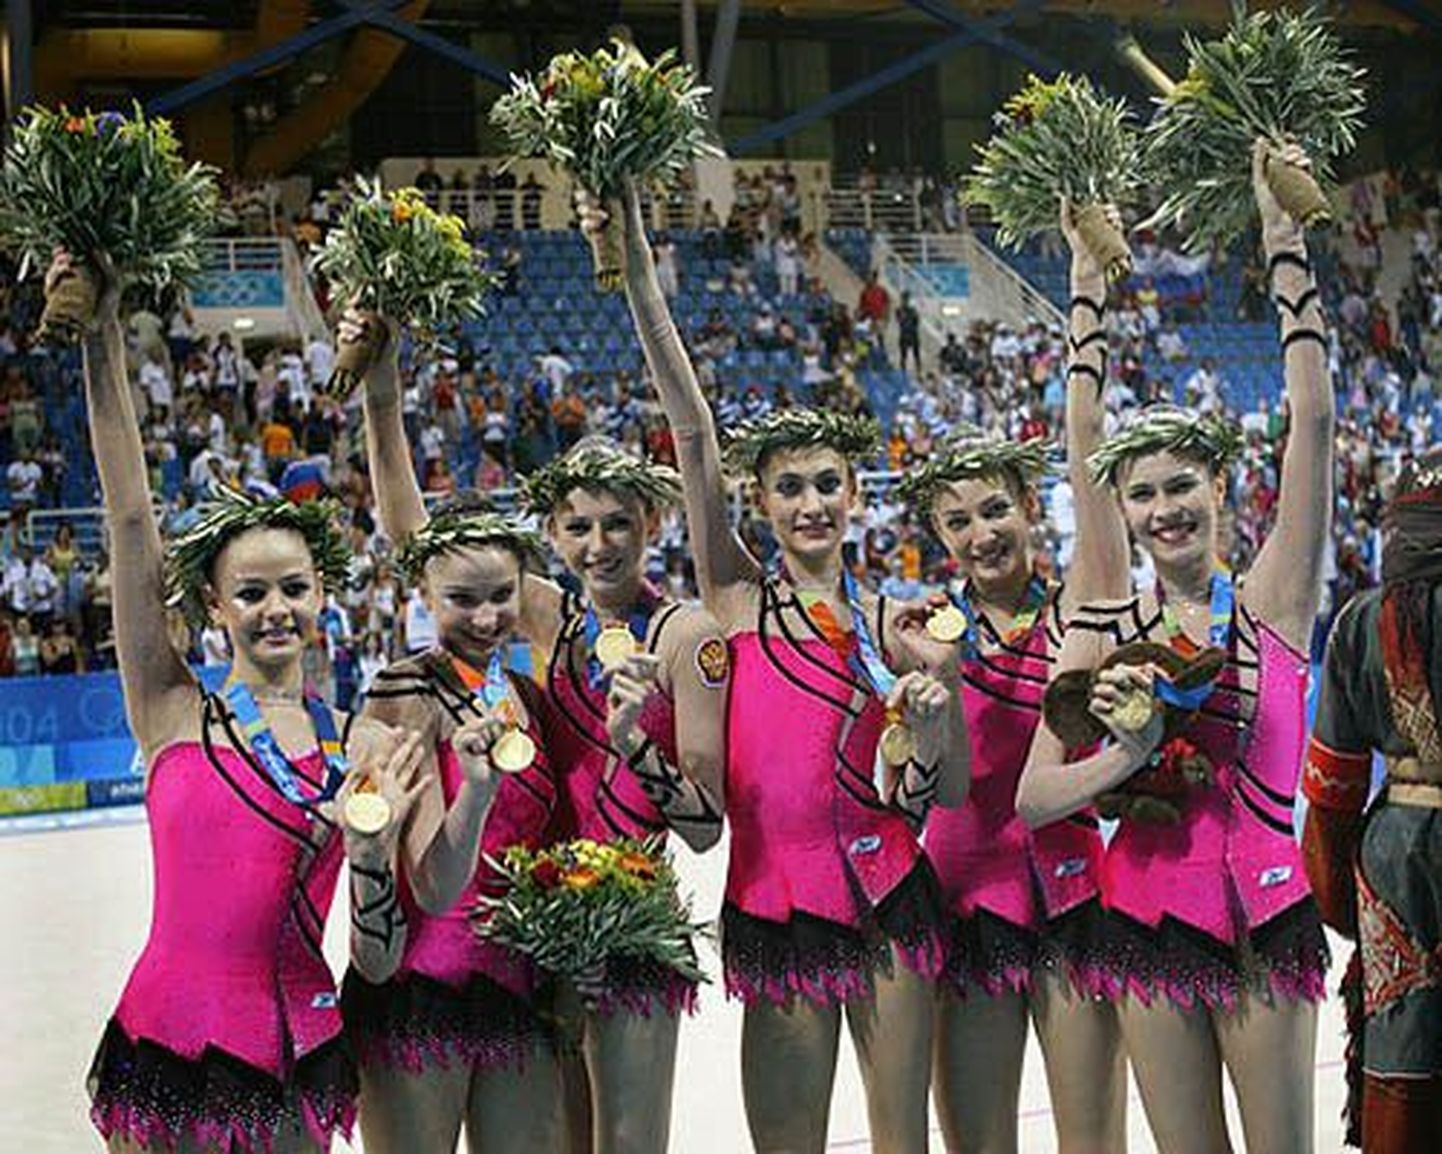 Venemaa kuldne naiskond Ateena olümpial. Natalja Lavrova on pildil paremalt teine.